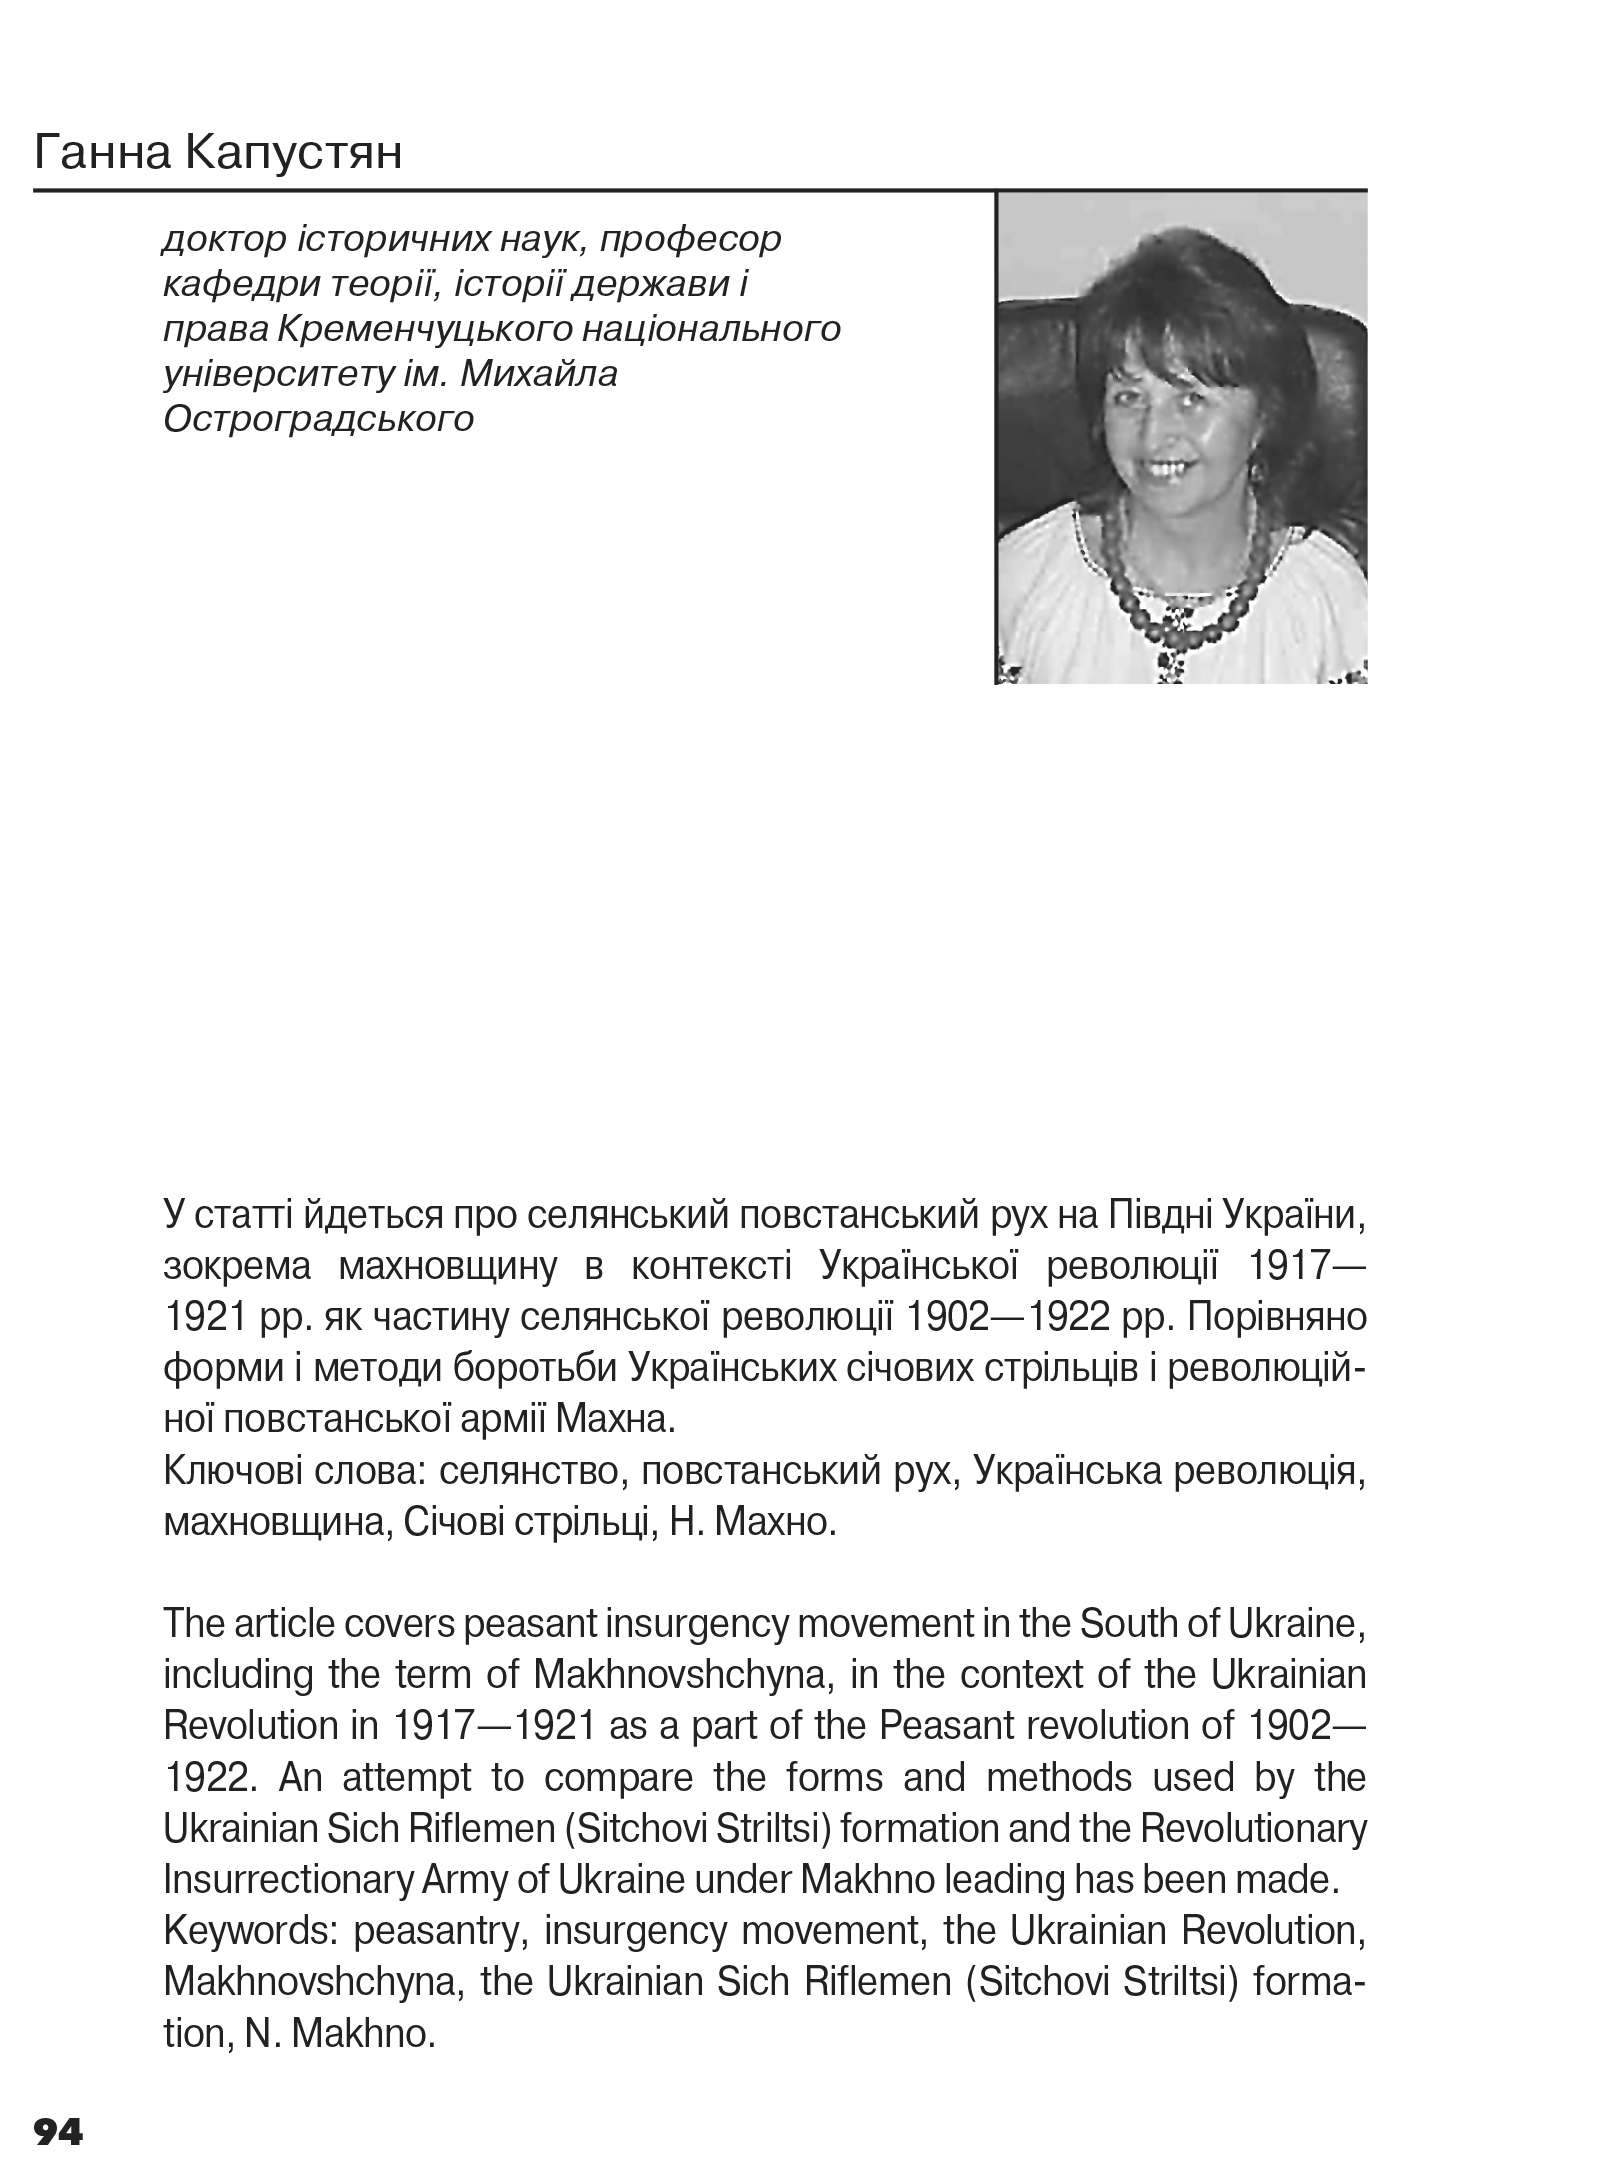 Український визвольний рух №16, ст. 94 - 109